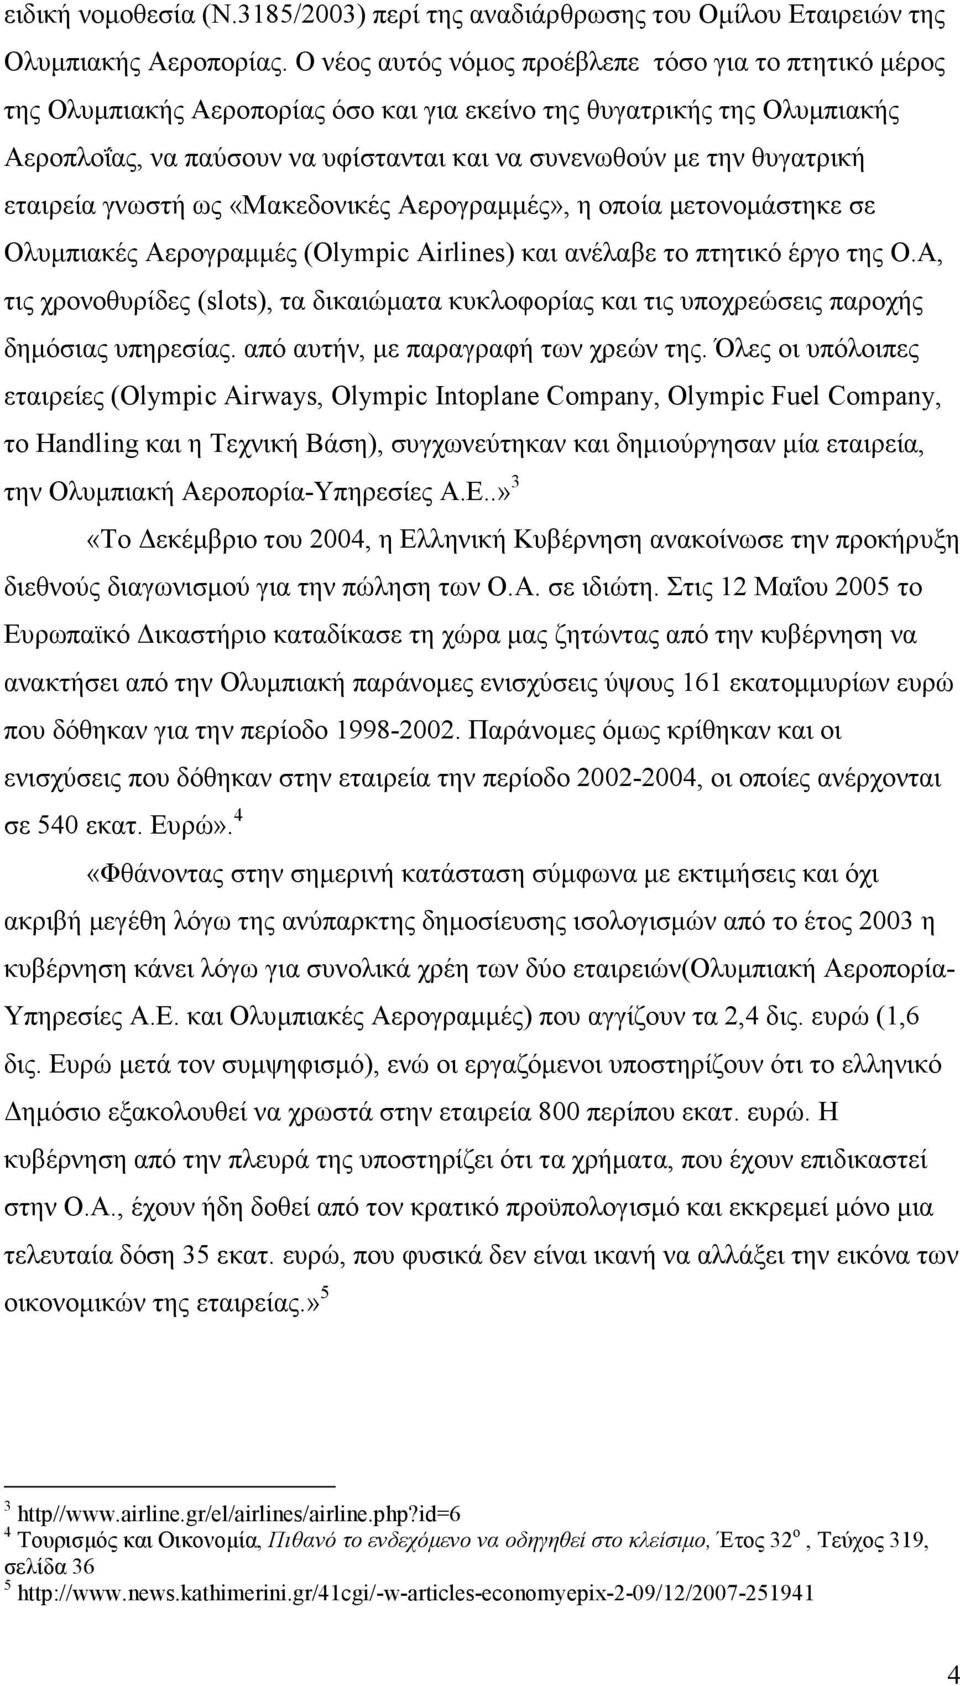 θυγατρική εταιρεία γνωστή ως «Μακεδονικές Αερογραµµές», η οποία µετονοµάστηκε σε Ολυµπιακές Αερογραµµές (Οlympic Airlines) και ανέλαβε το πτητικό έργο της Ο.